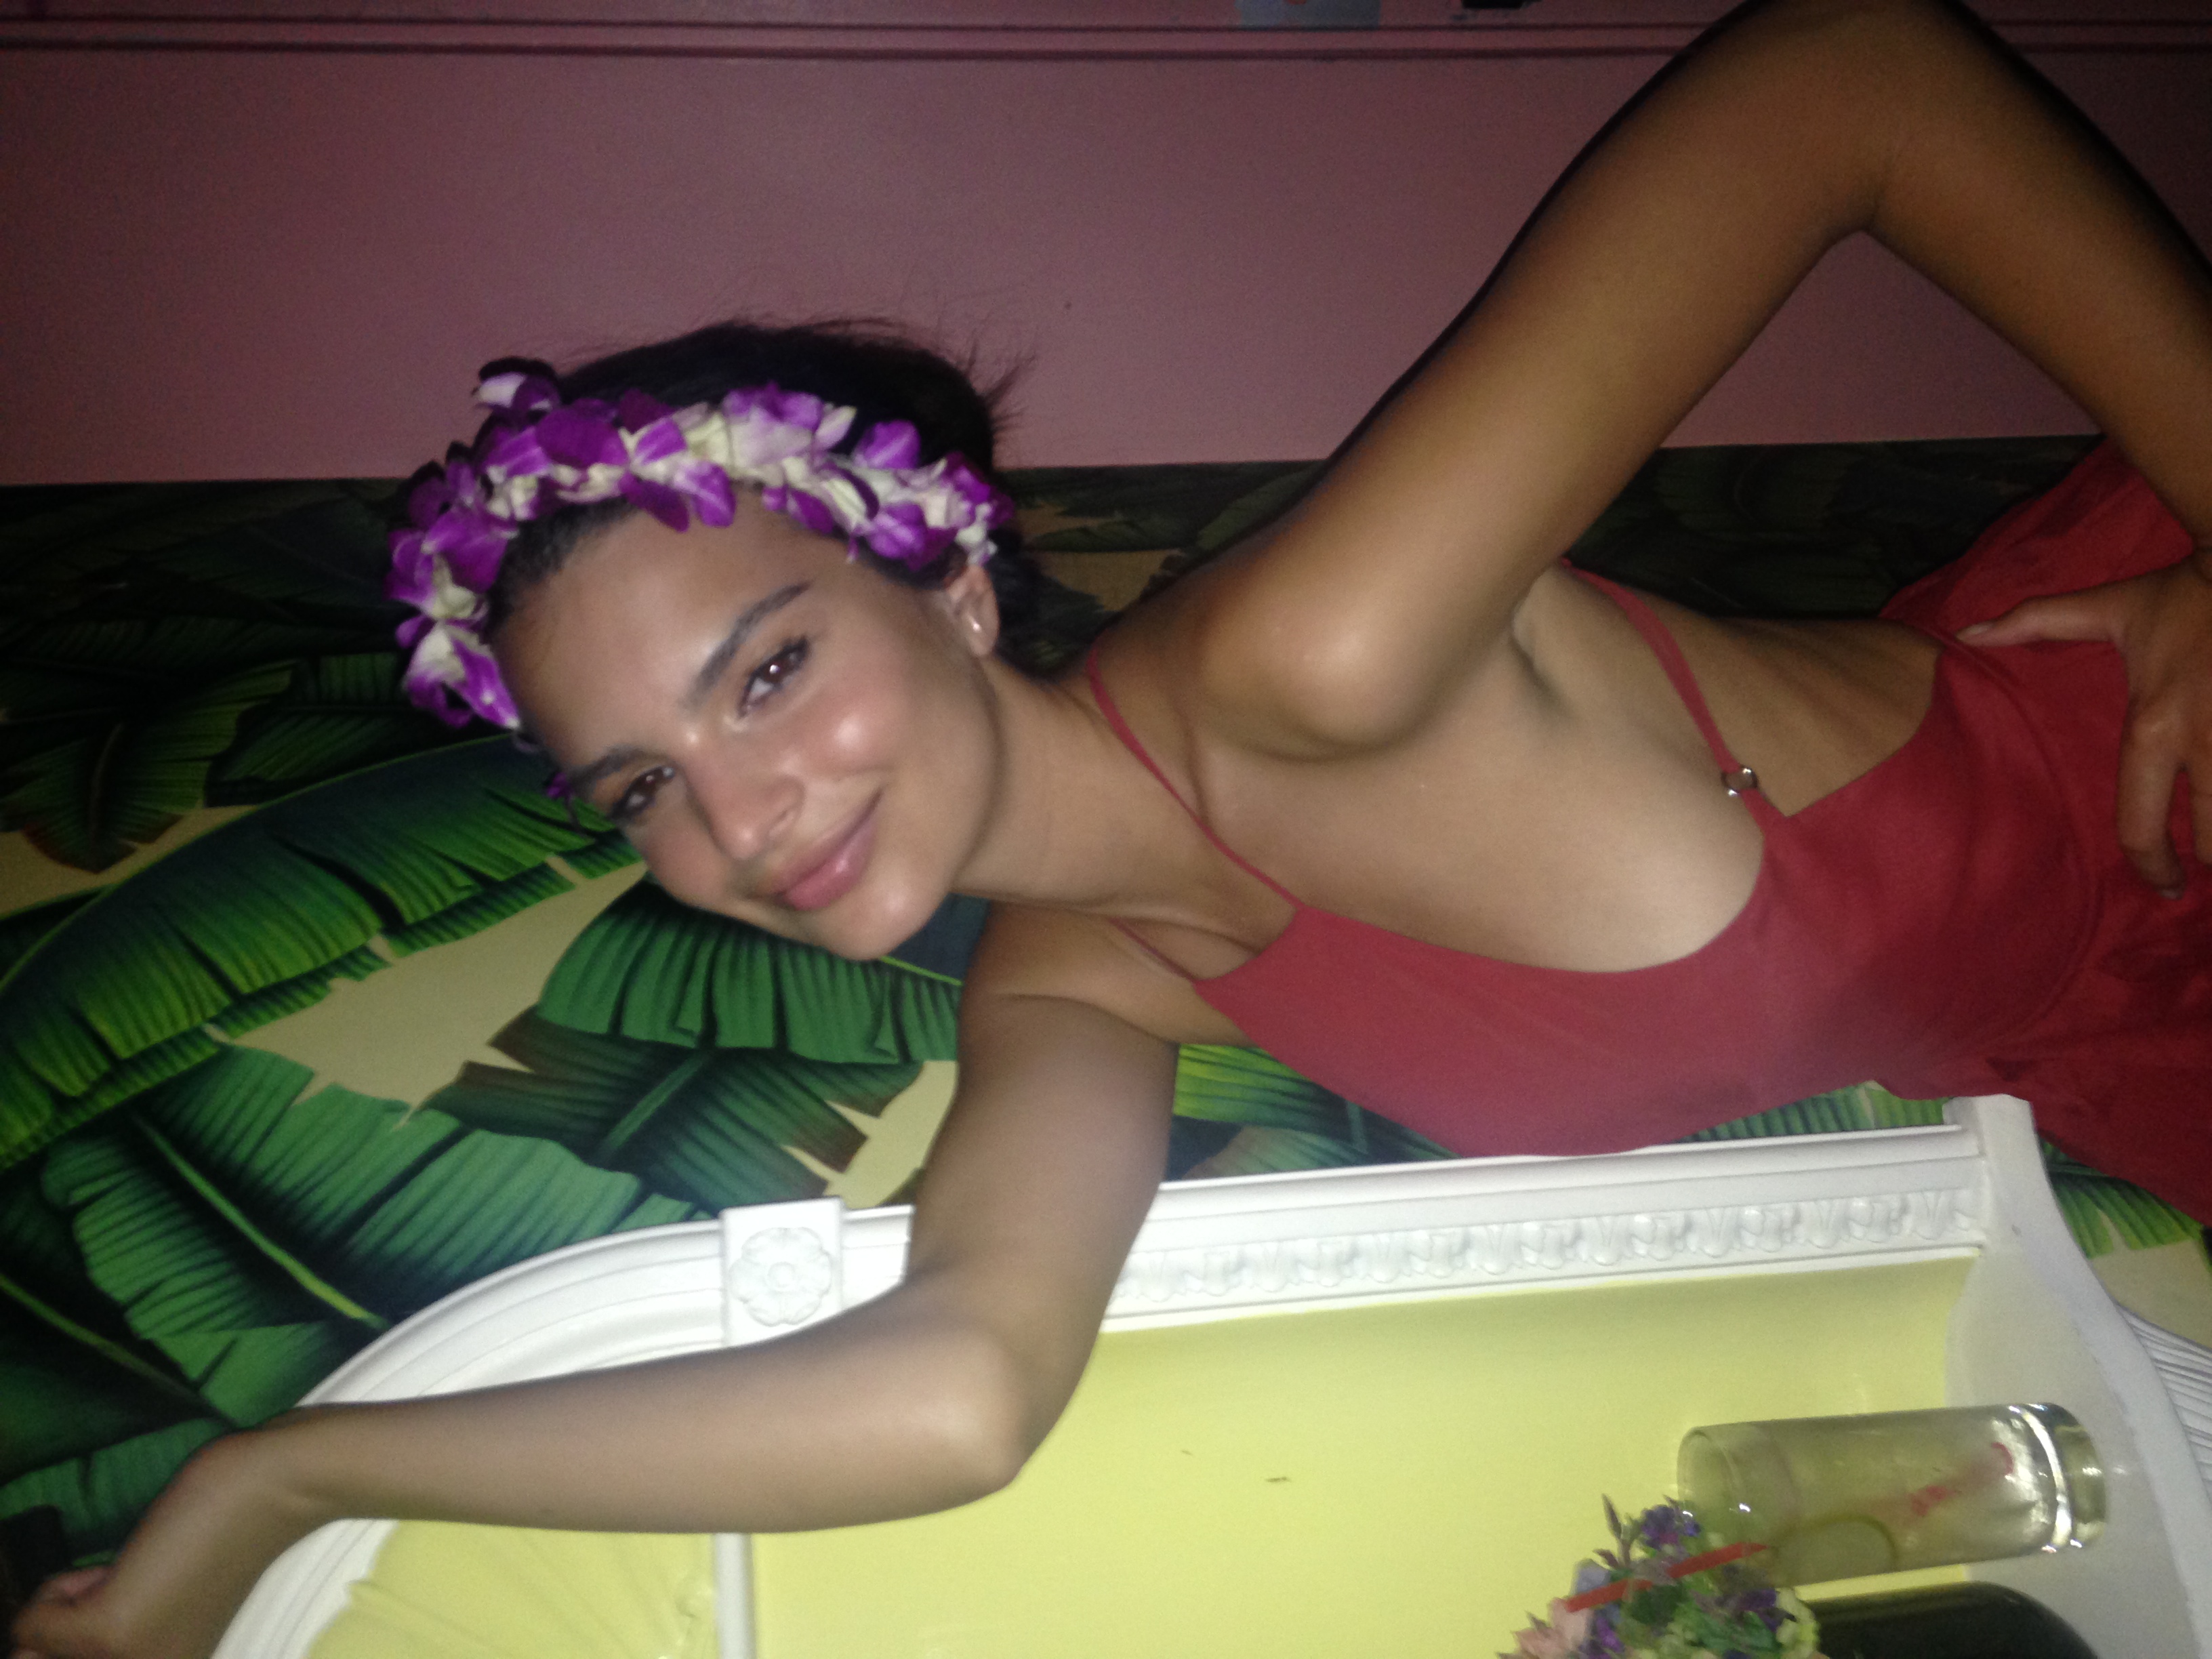  Emily Ratajkowski Naked Celeb IMG_2592 